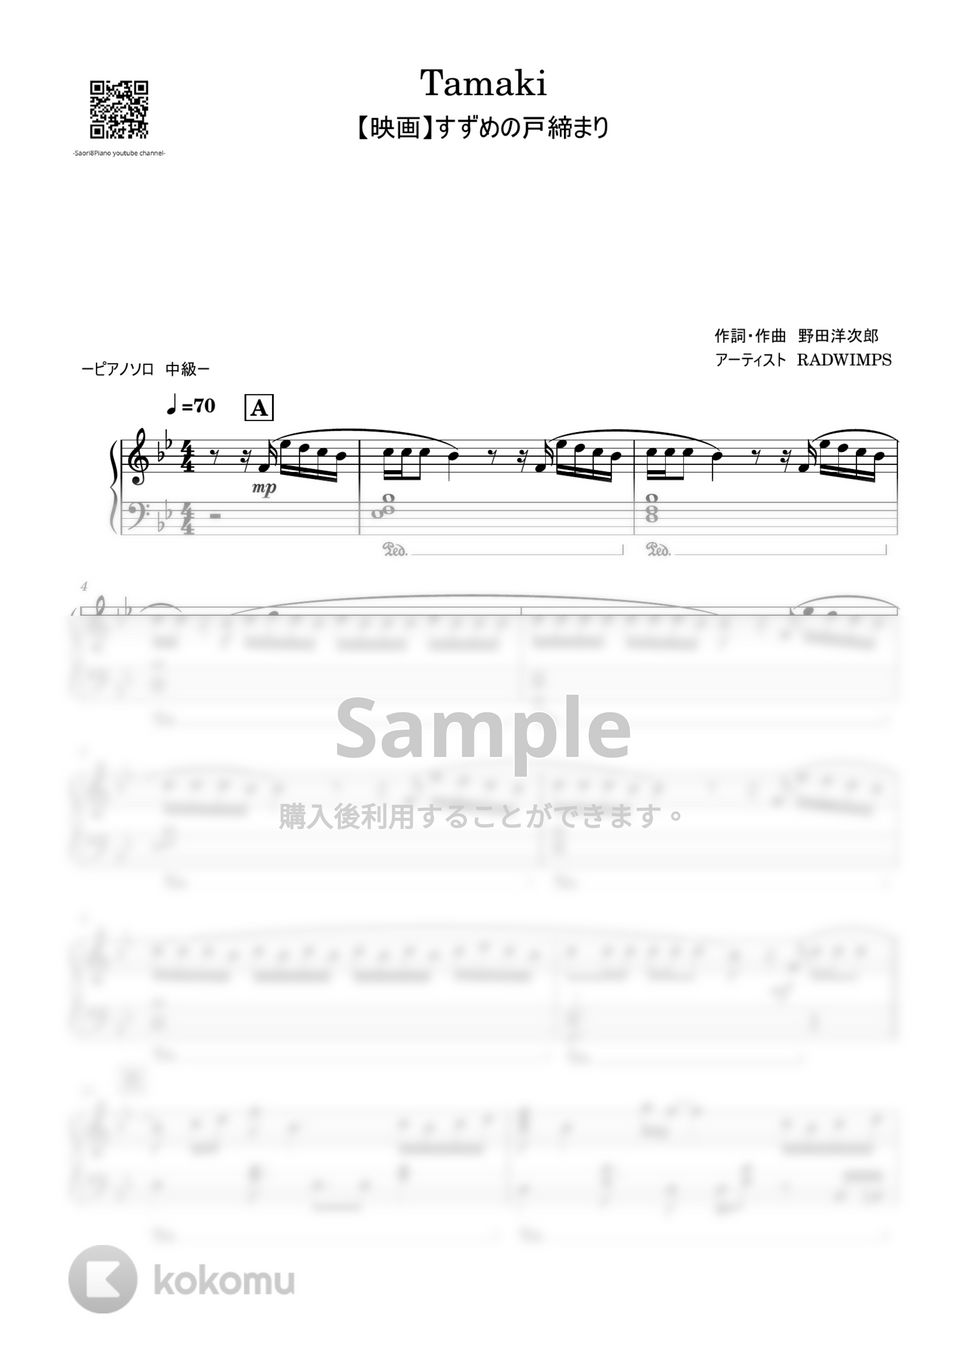 DASWIMPS - Tamaki (すずめの戸締まり/中級レベル) by Saori8Piano